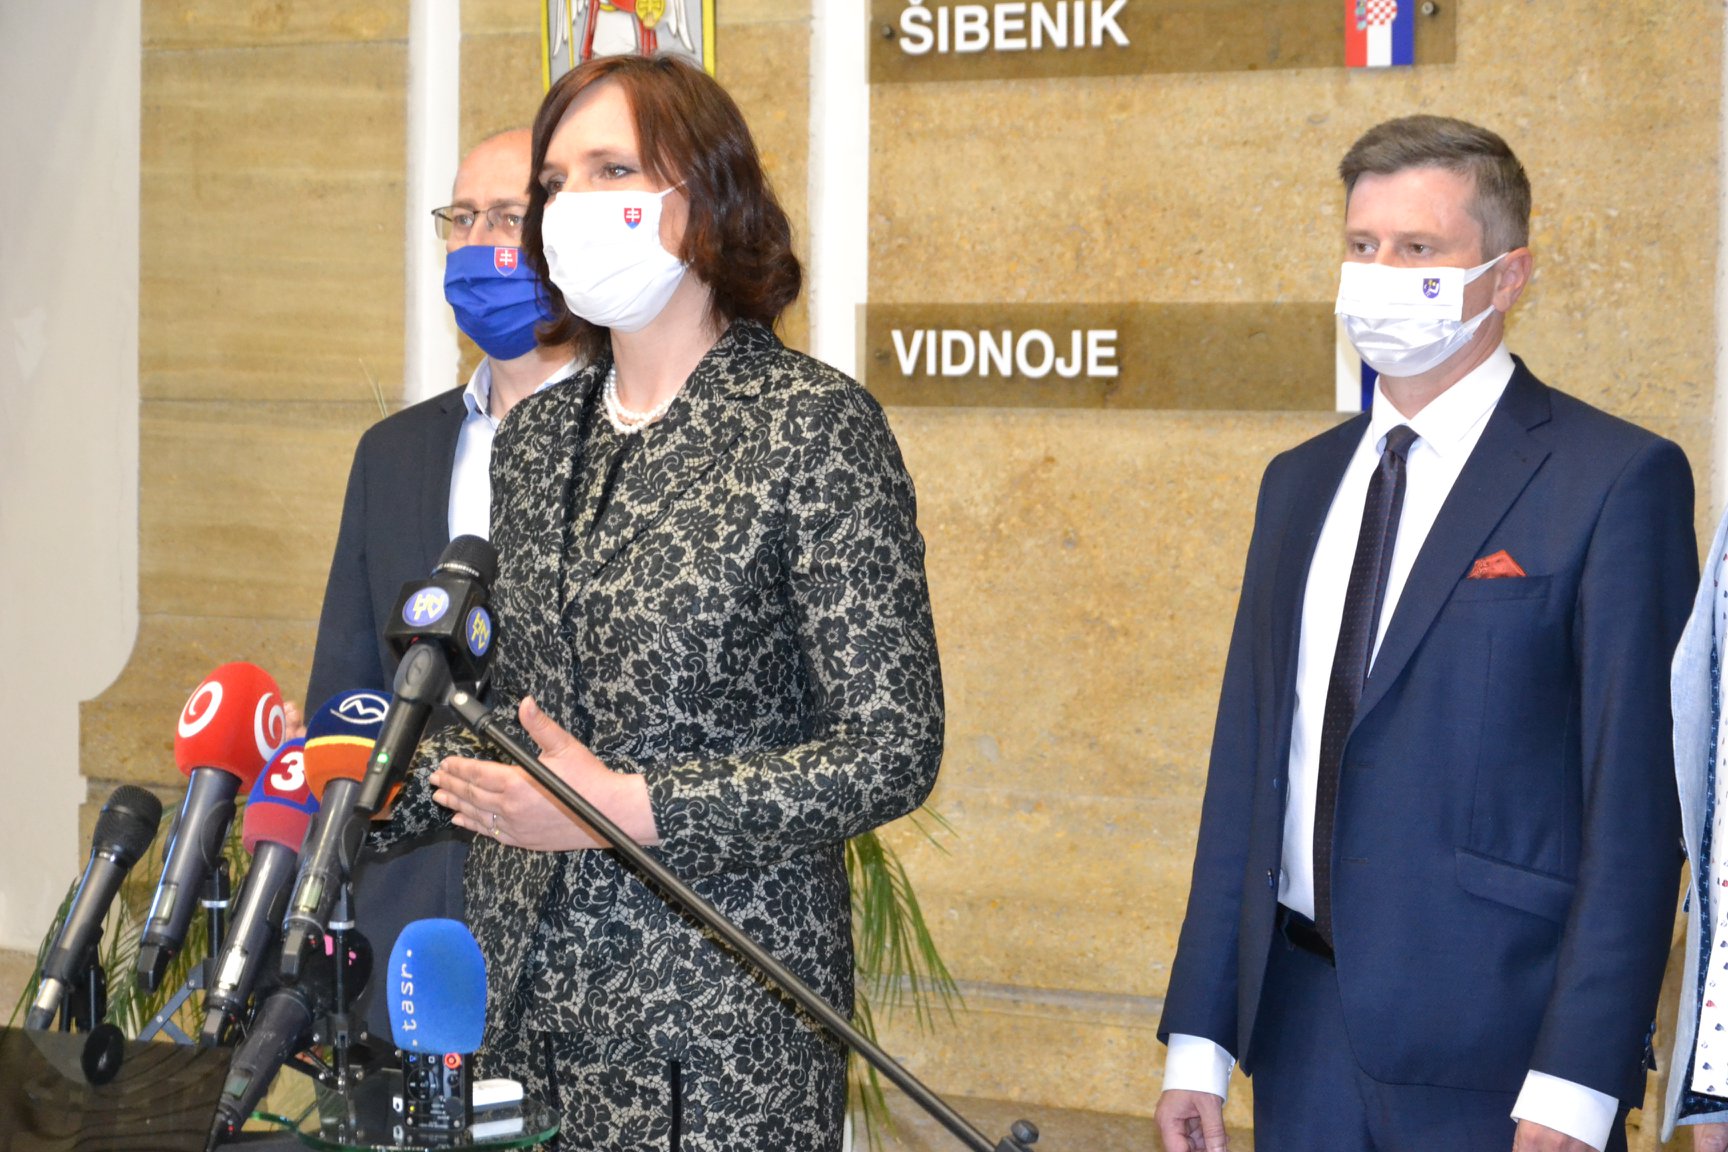 Vicepremiérka Veronika Remišová: Podarilo sa zachrániť 400 pracovných miest v Humennom. Osobitne v čase krízy je pre štát dôležité každé jedno pracovné miesto